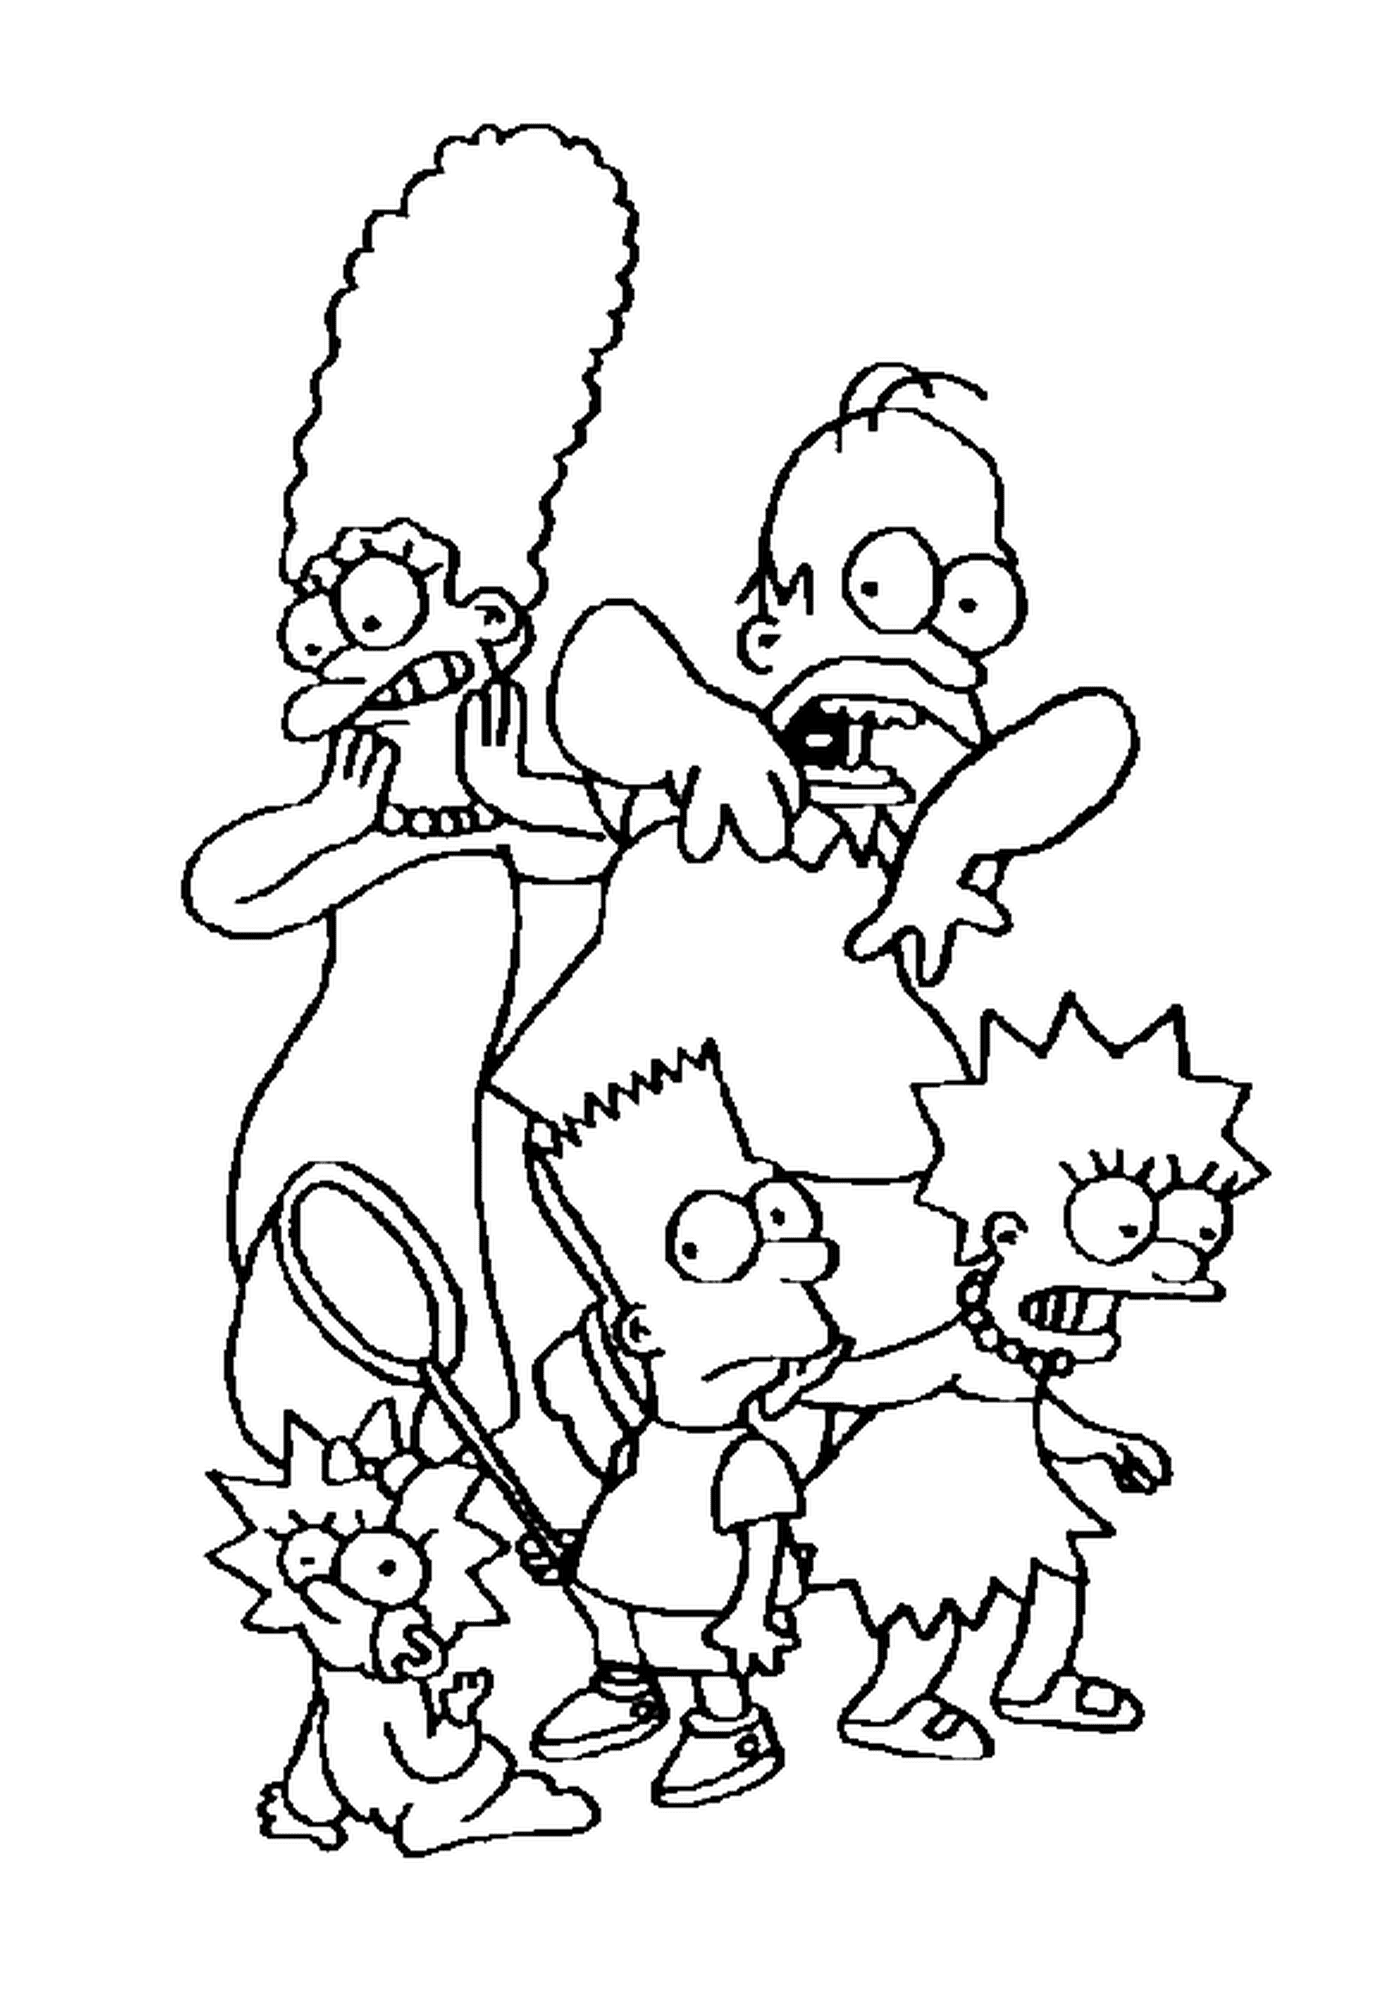  La famiglia Simpson spaventata, personaggi dei cartoni animati 